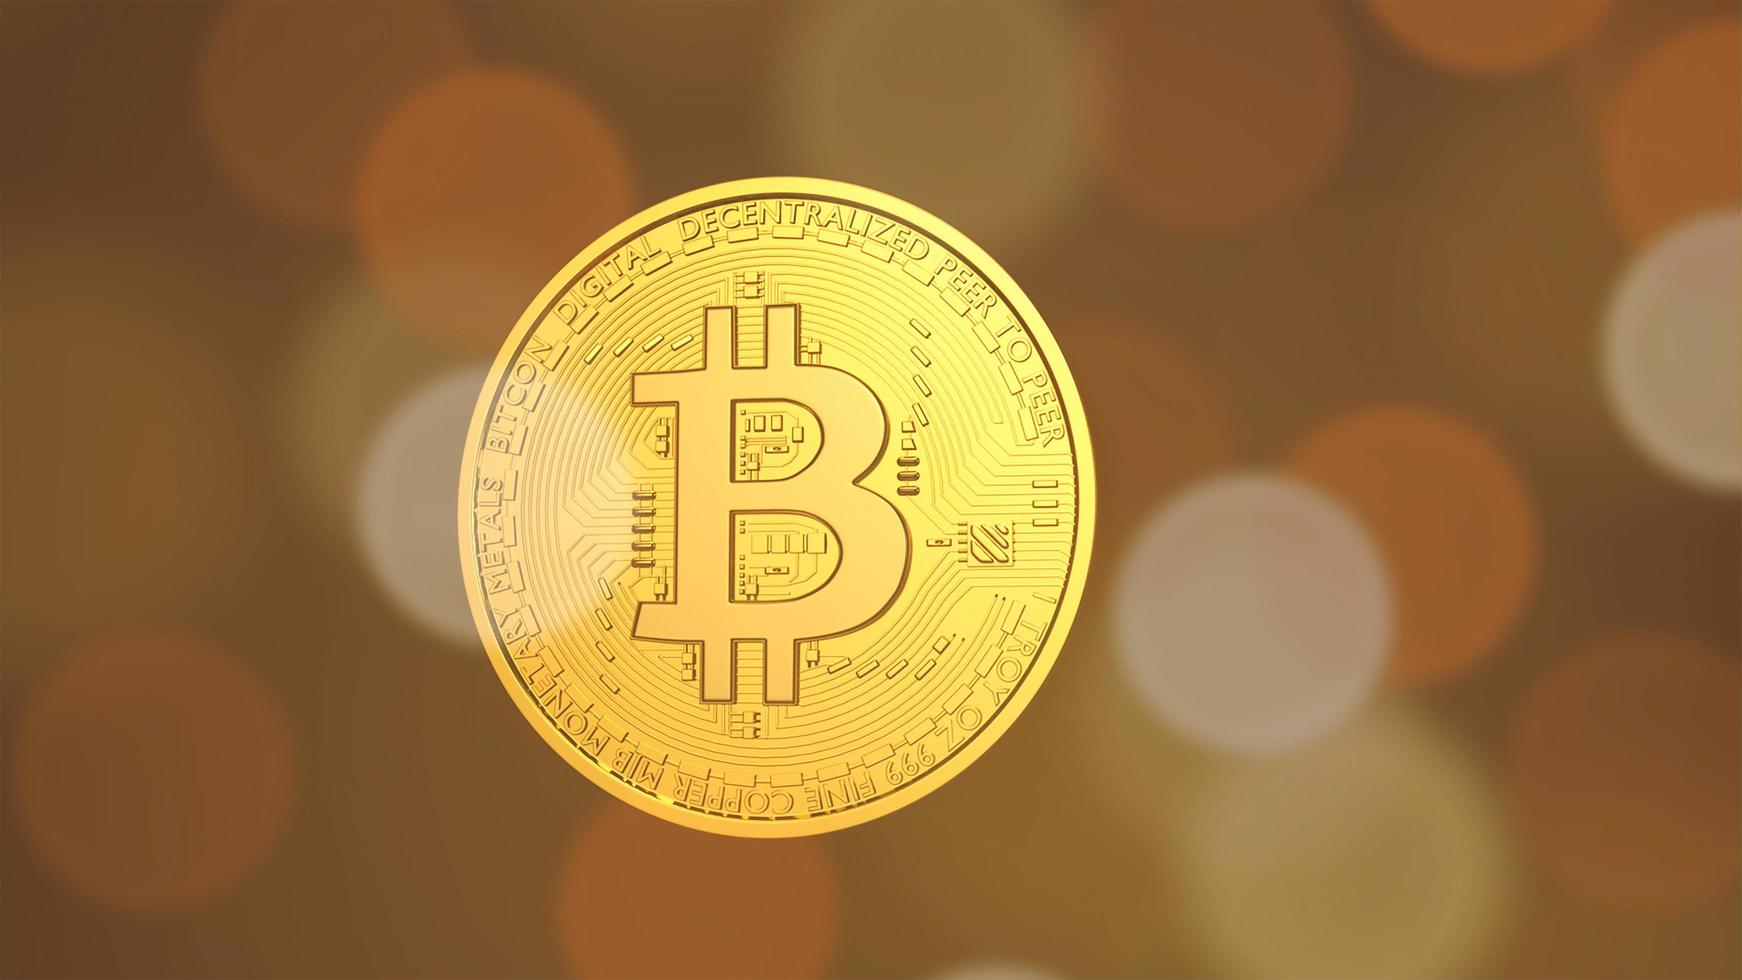 moeda digital bitcoin. criptomoeda btc o novo dinheiro virtual fecha a renderização 3d de bitcoins dourados em fundo preto foto